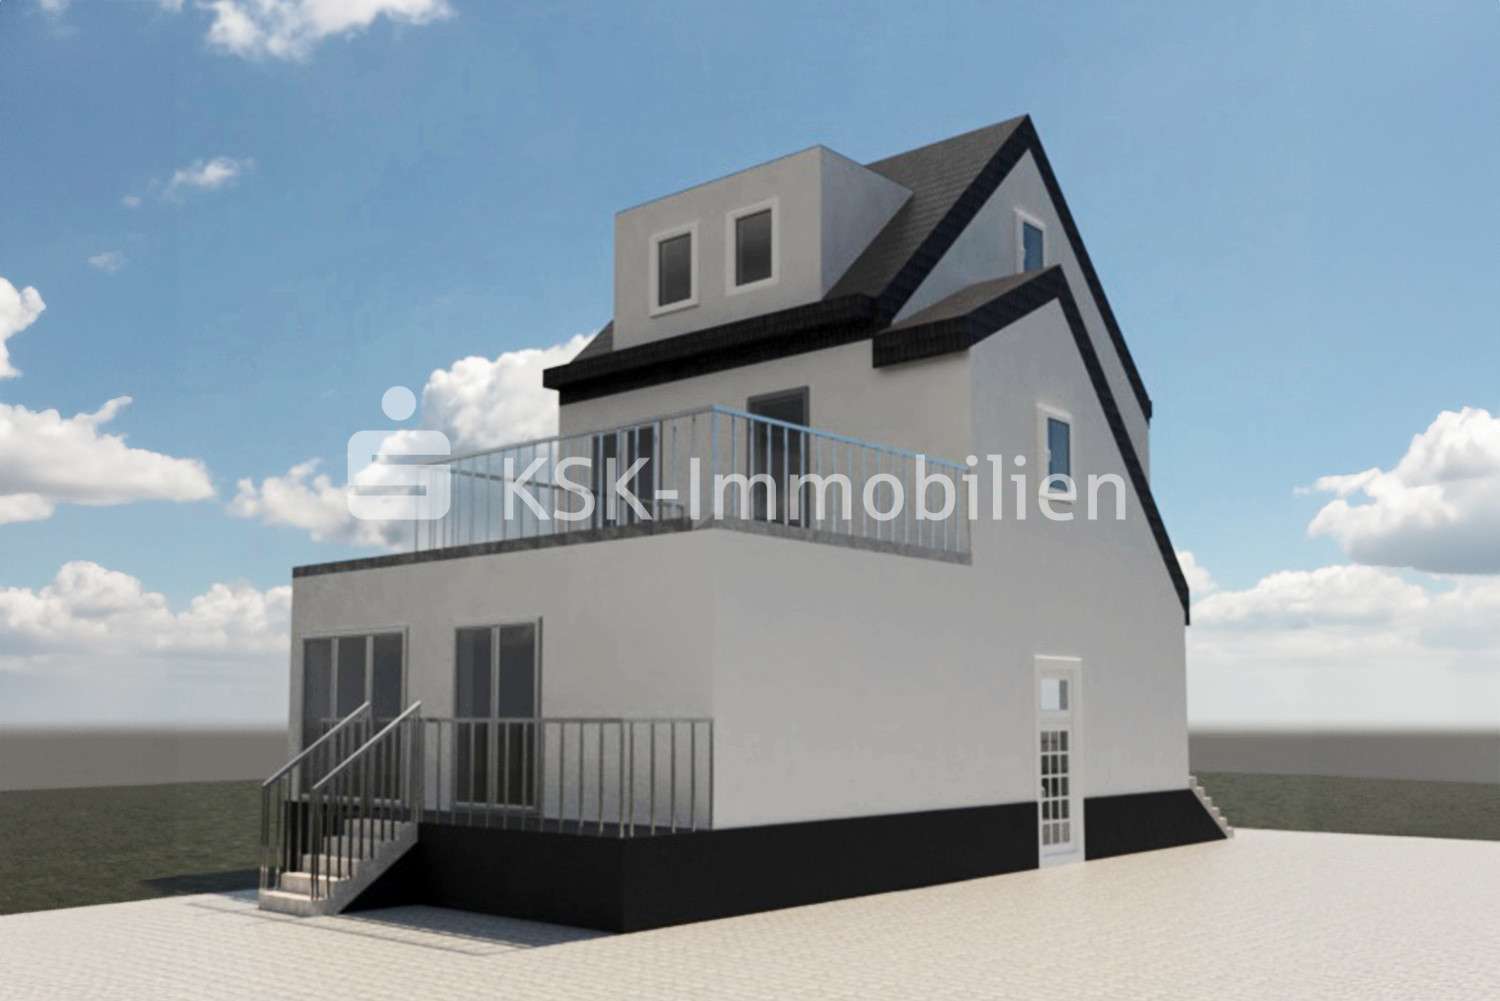 127688 Ansicht - Etagenwohnung in 50169 Kerpen / Horrem mit 84m² kaufen